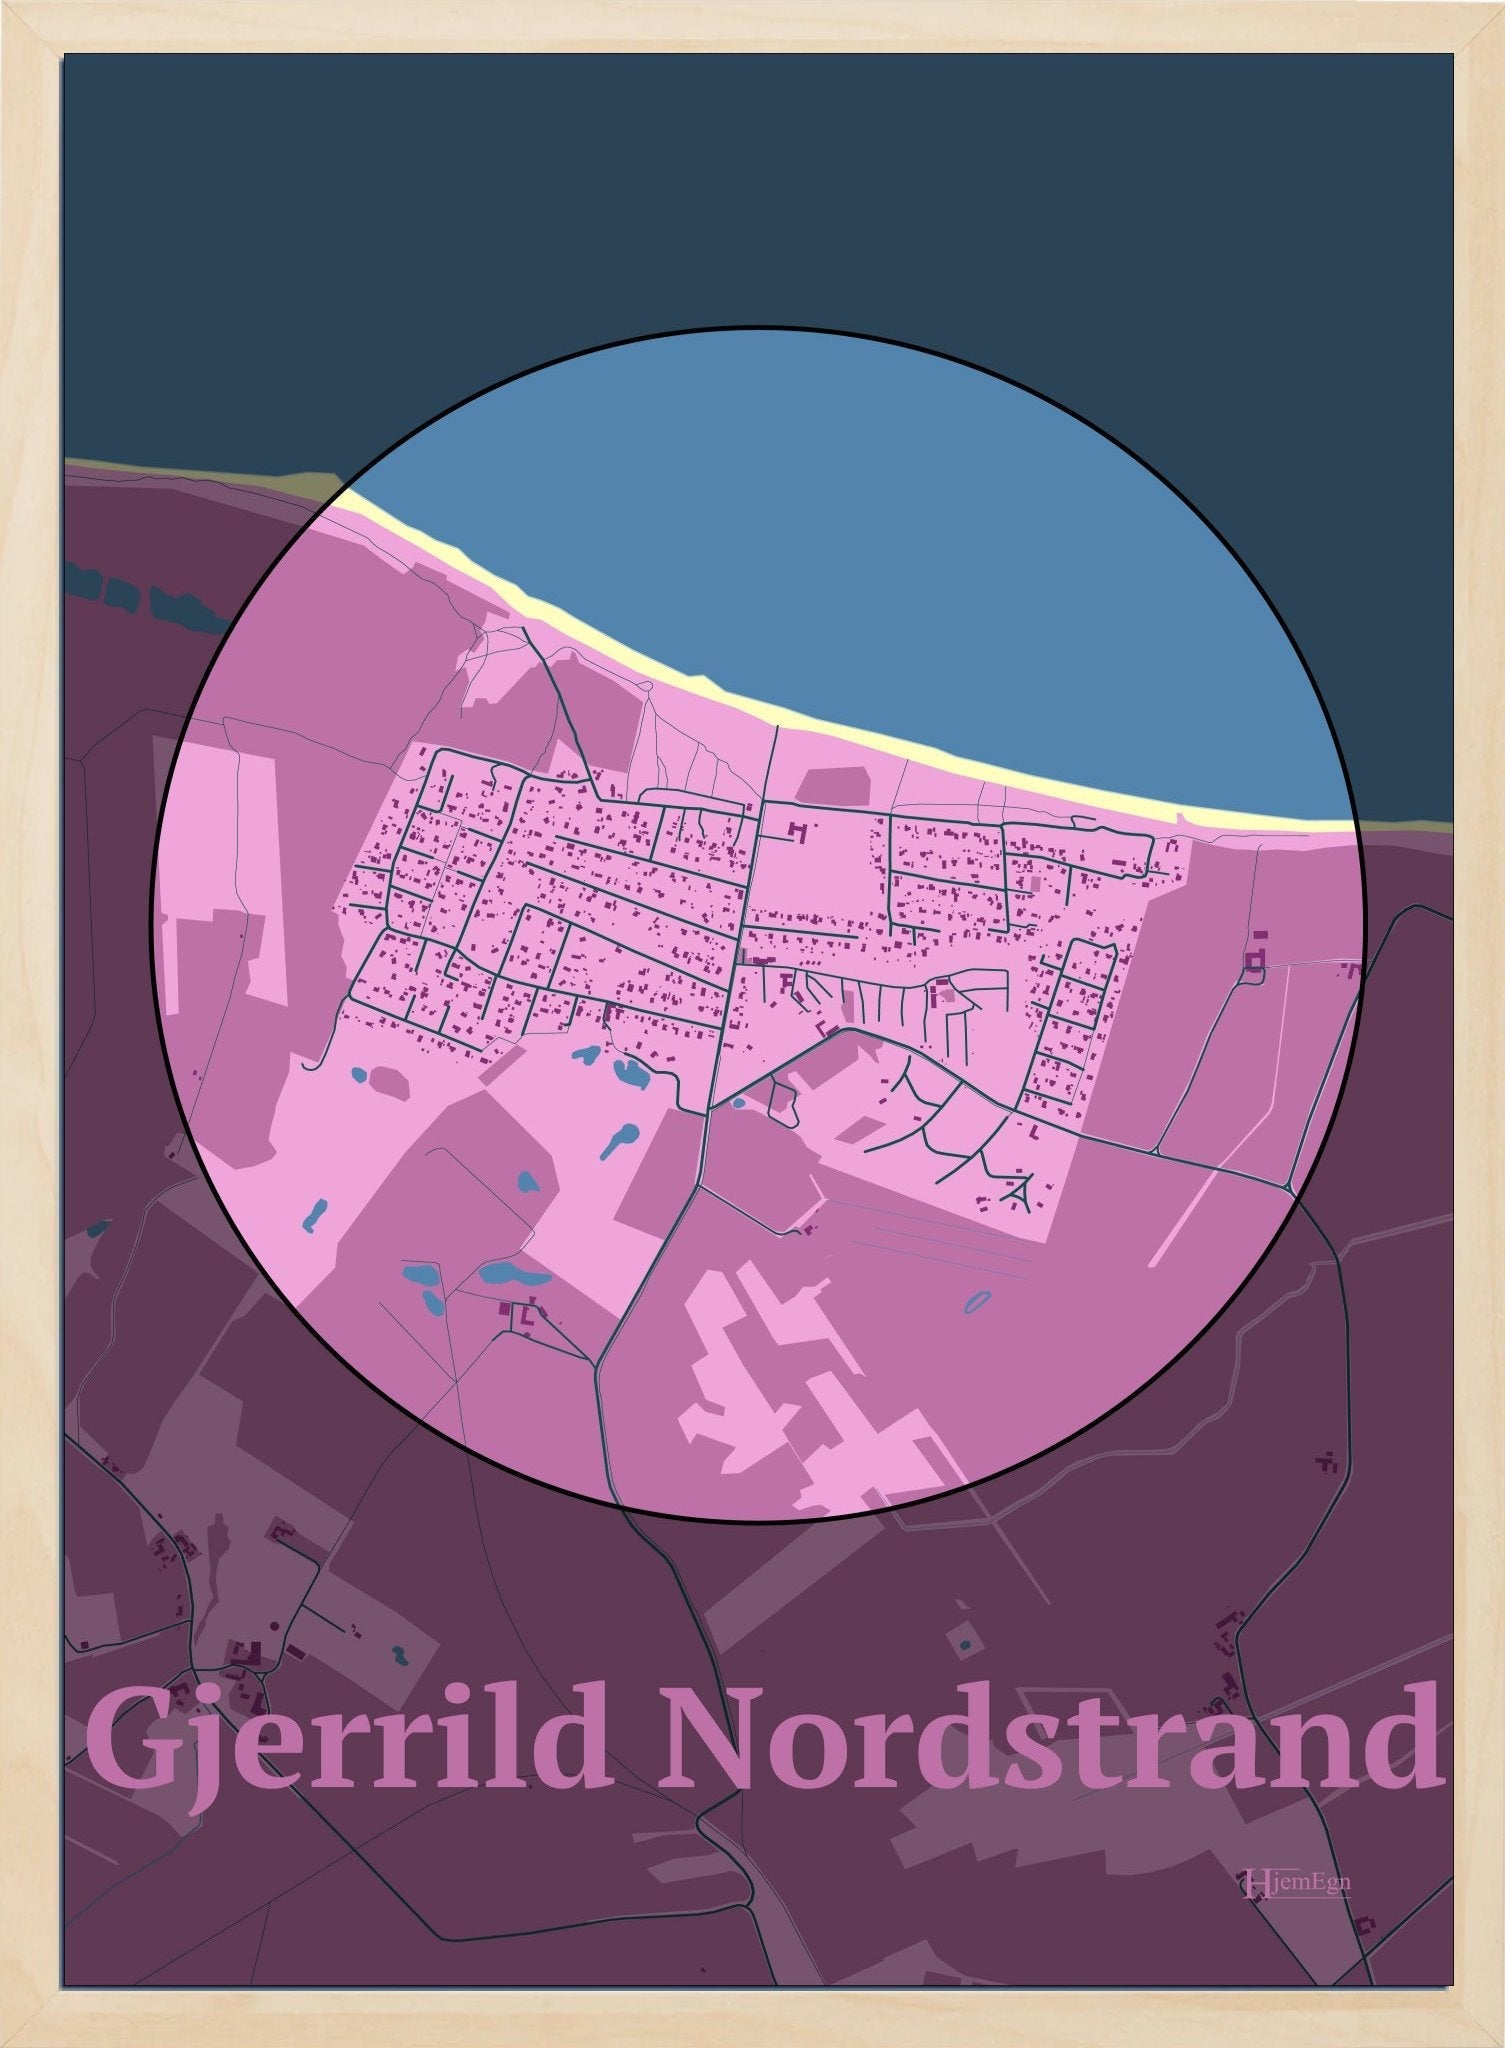 Gjerrild Nordstrand plakat i farve pastel rød og HjemEgn.dk design centrum. Design bykort for Gjerrild Nordstrand